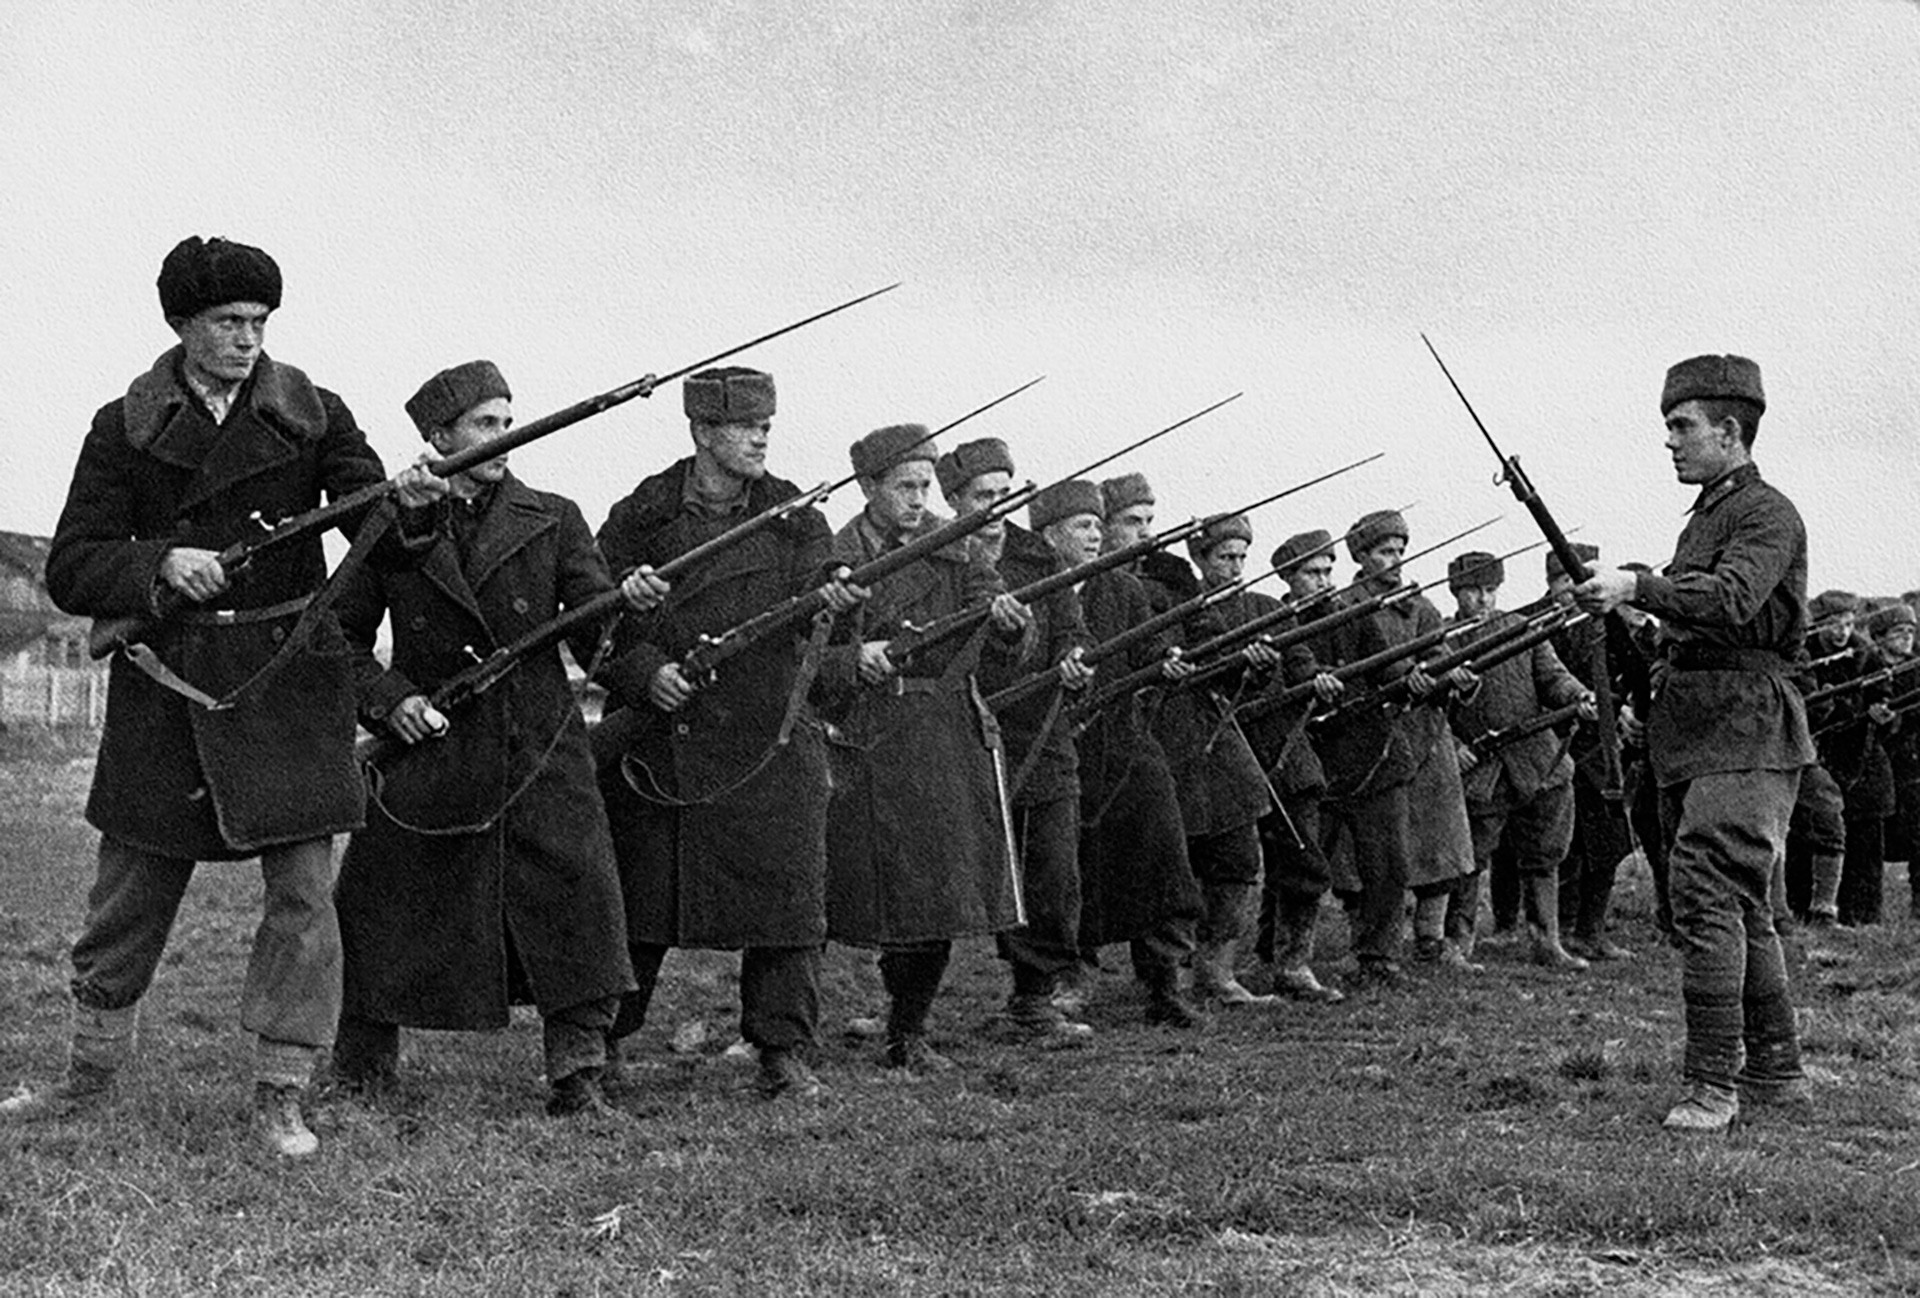 Dobrovoljci. Uvježbavanje borbe bajunetama u Prvom bataljunu 1. Moskovske komunističke pukovnije.